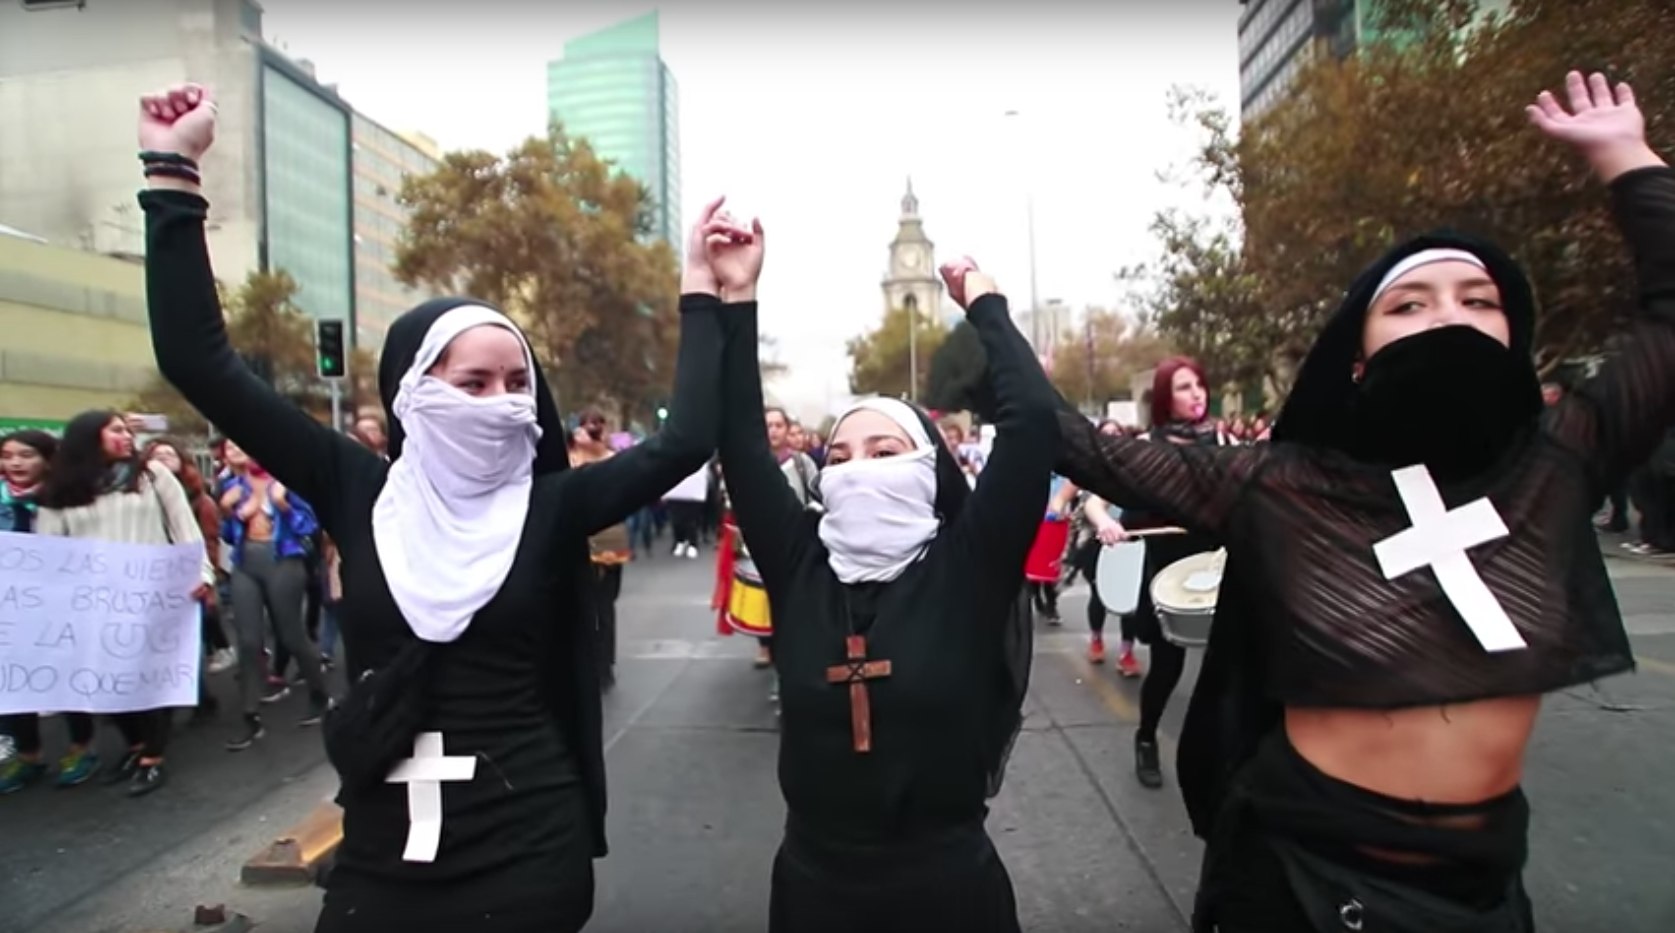 VIDEO| Mayo feminista: El emocionante registro de la marcha contra la